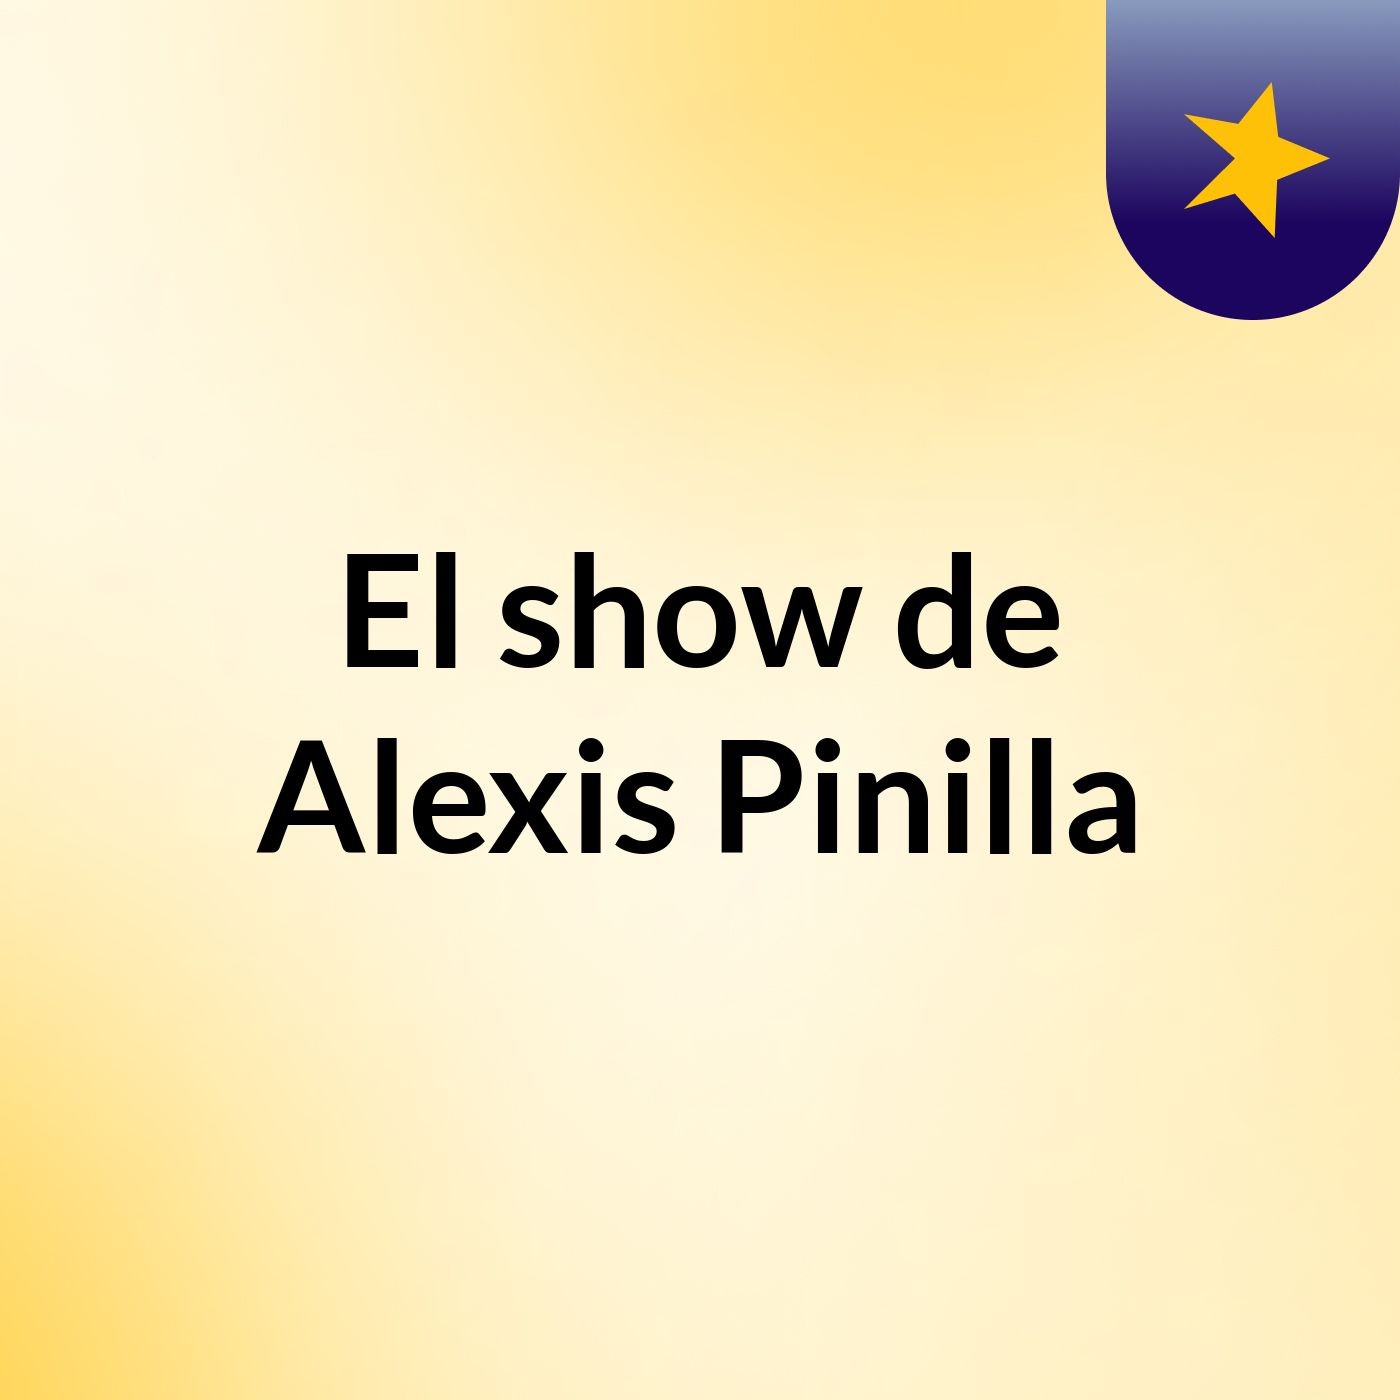 El show de Alexis Pinilla